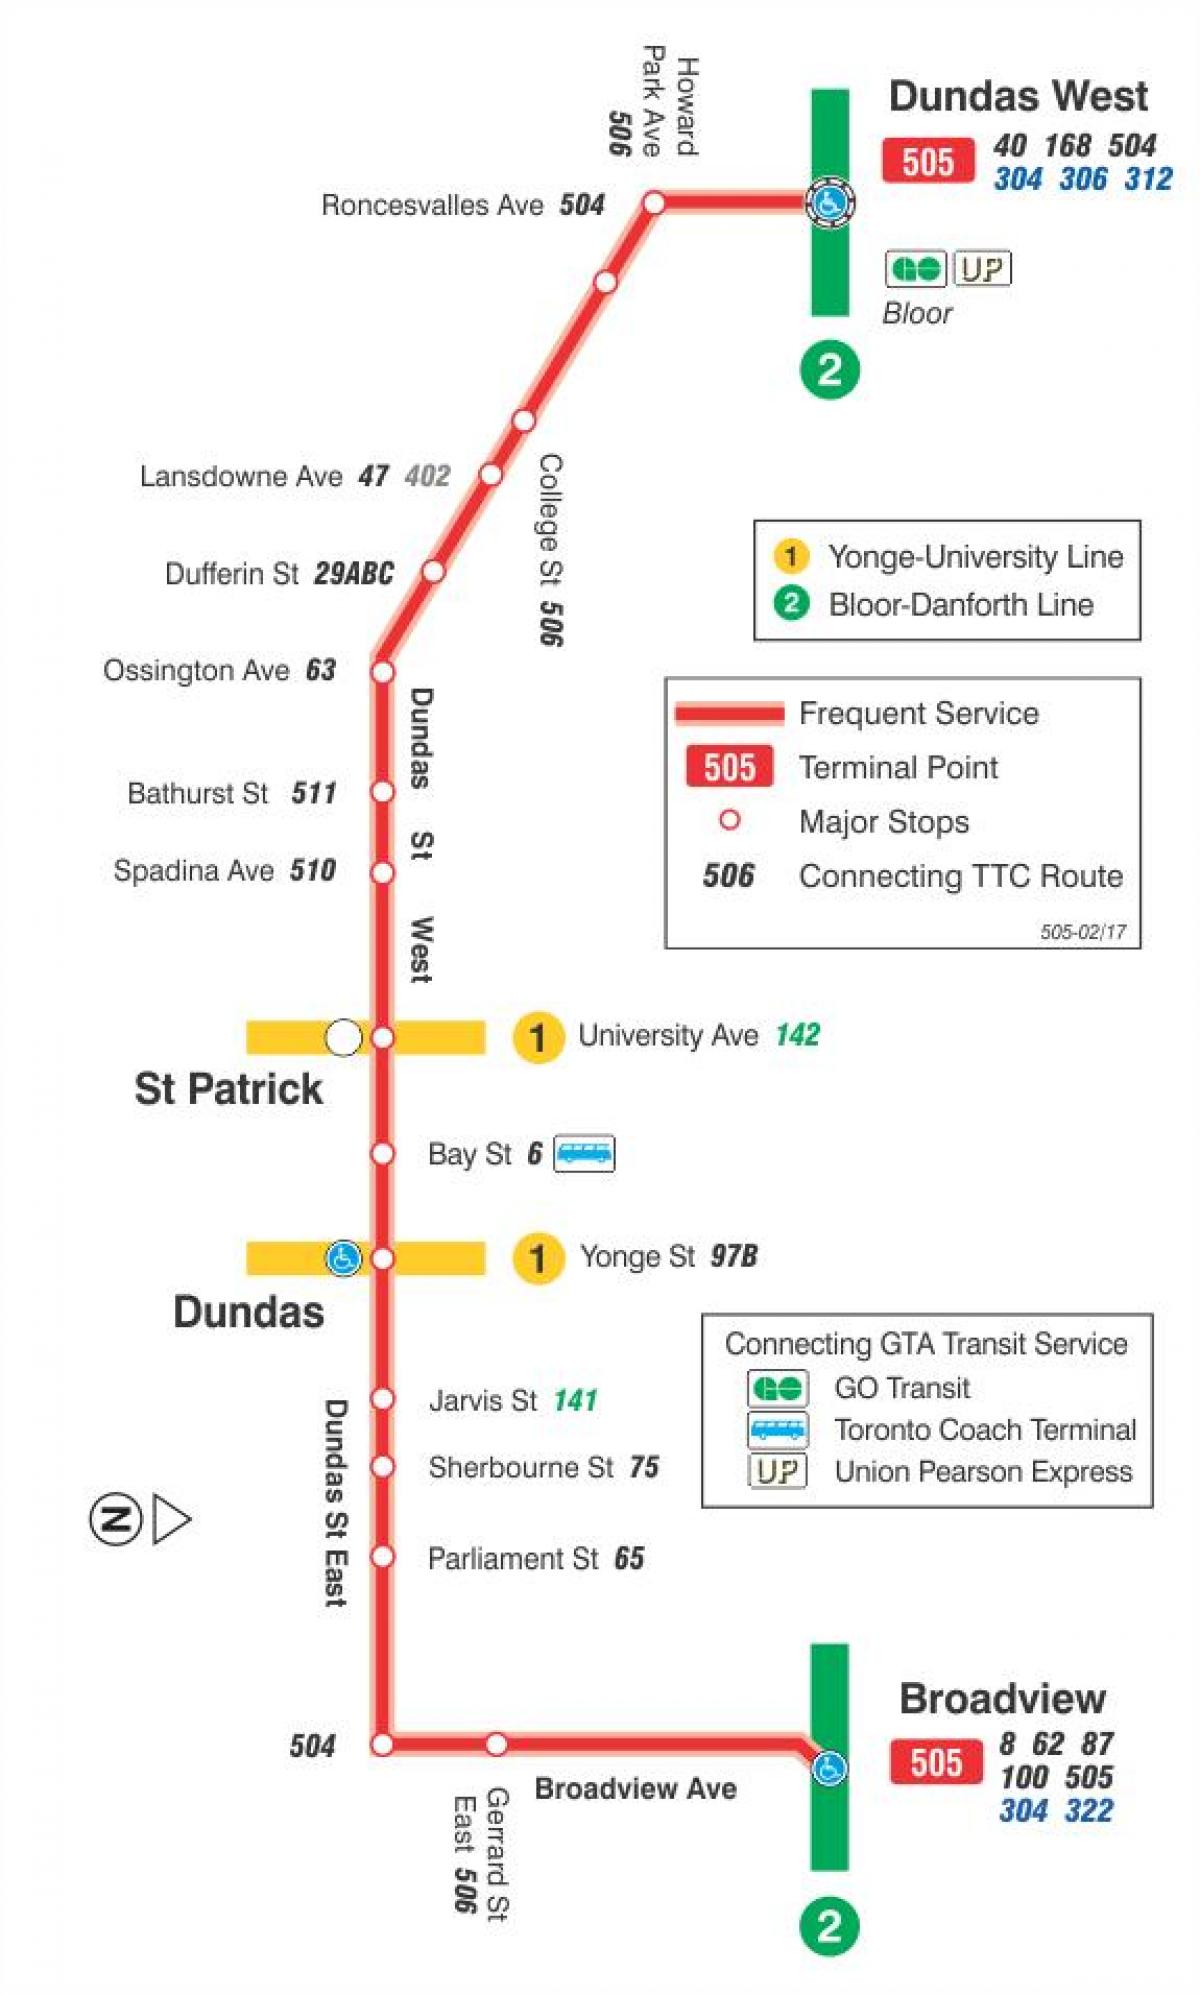 แผนที่ของ streetcar เส้น 505 Dundas